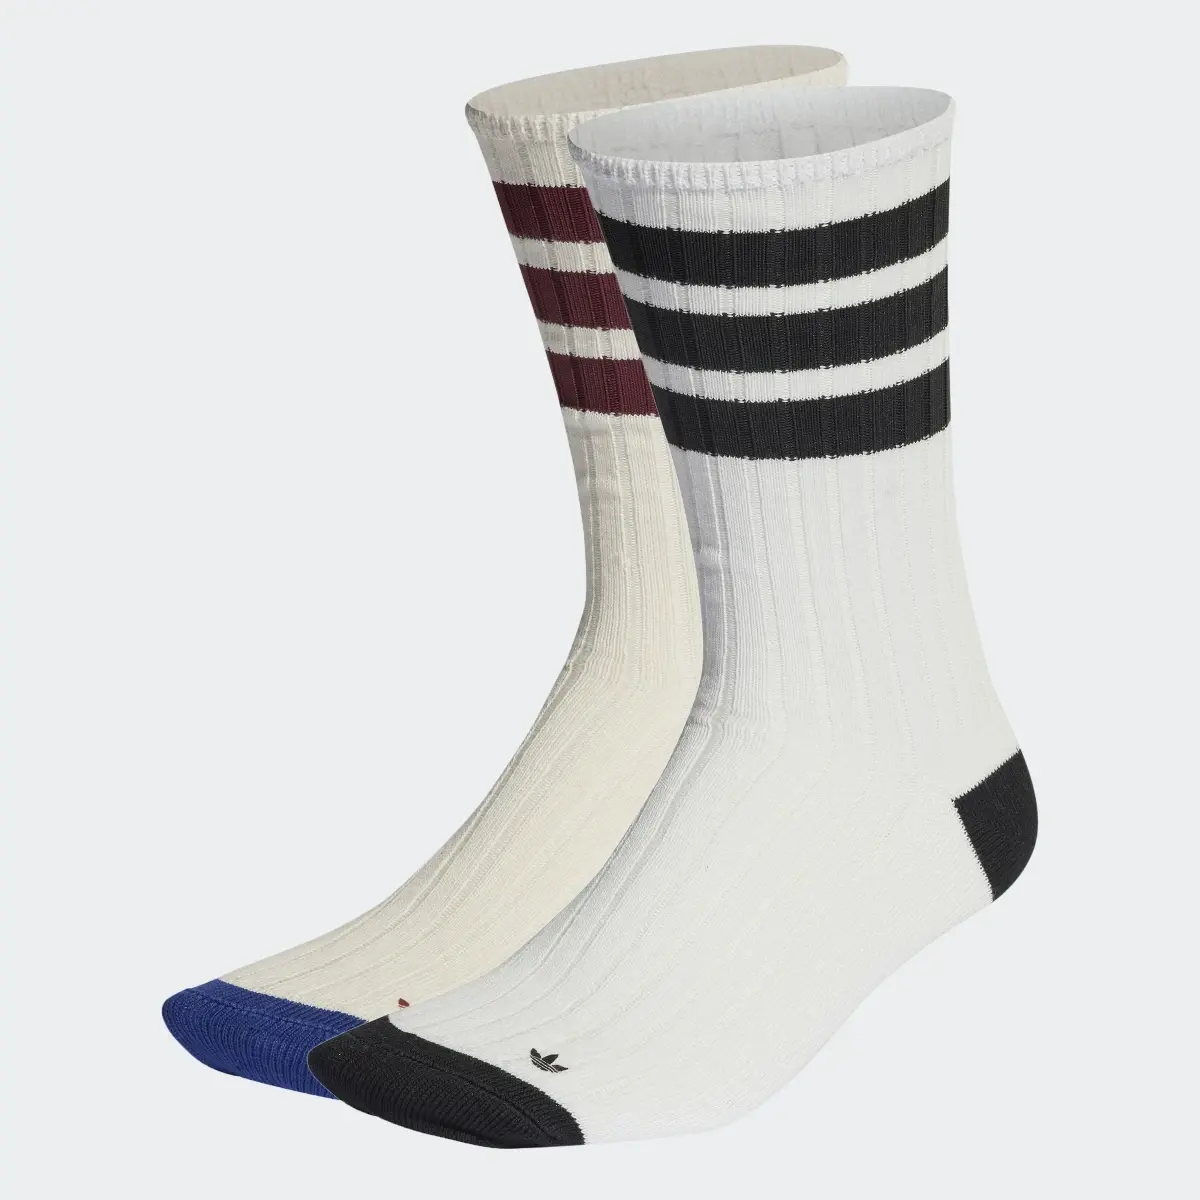 Adidas Premium Mid Crew Socks 2 Pairs. 1